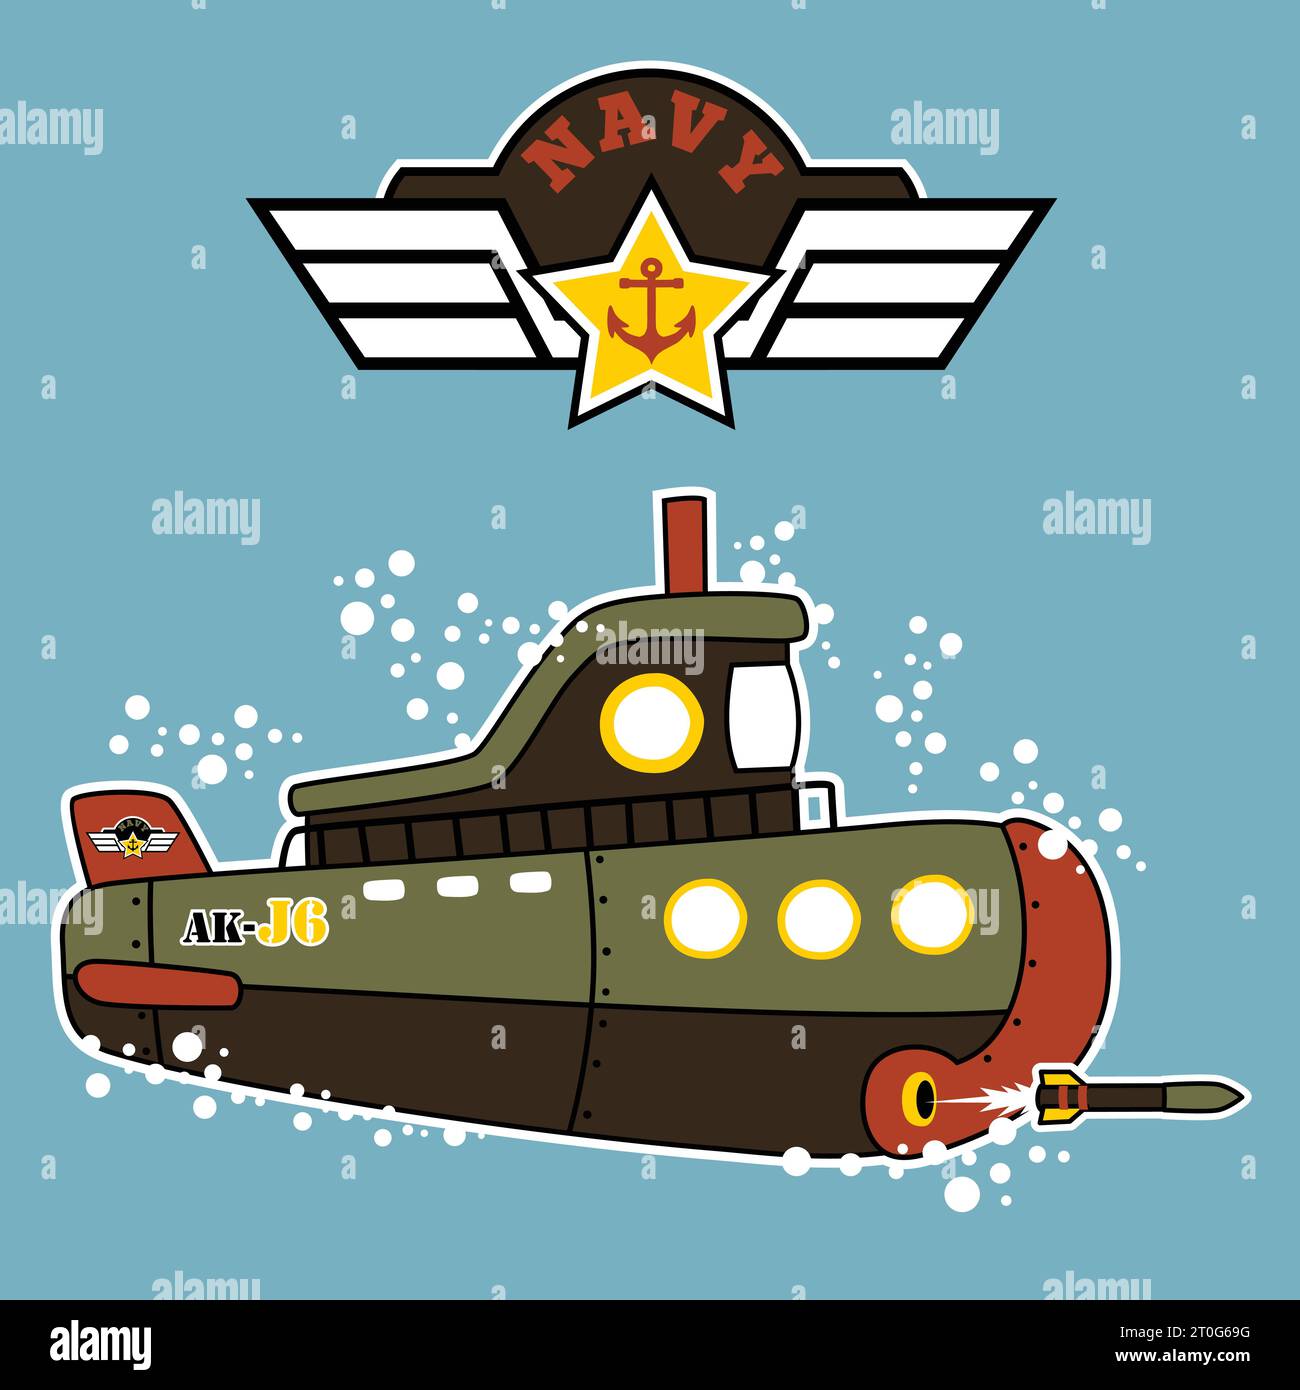 Militärisches U-Boot feuert einen Torpedo mit militärischem Logo ab, Vektor-Zeichentrickillustration Stock Vektor